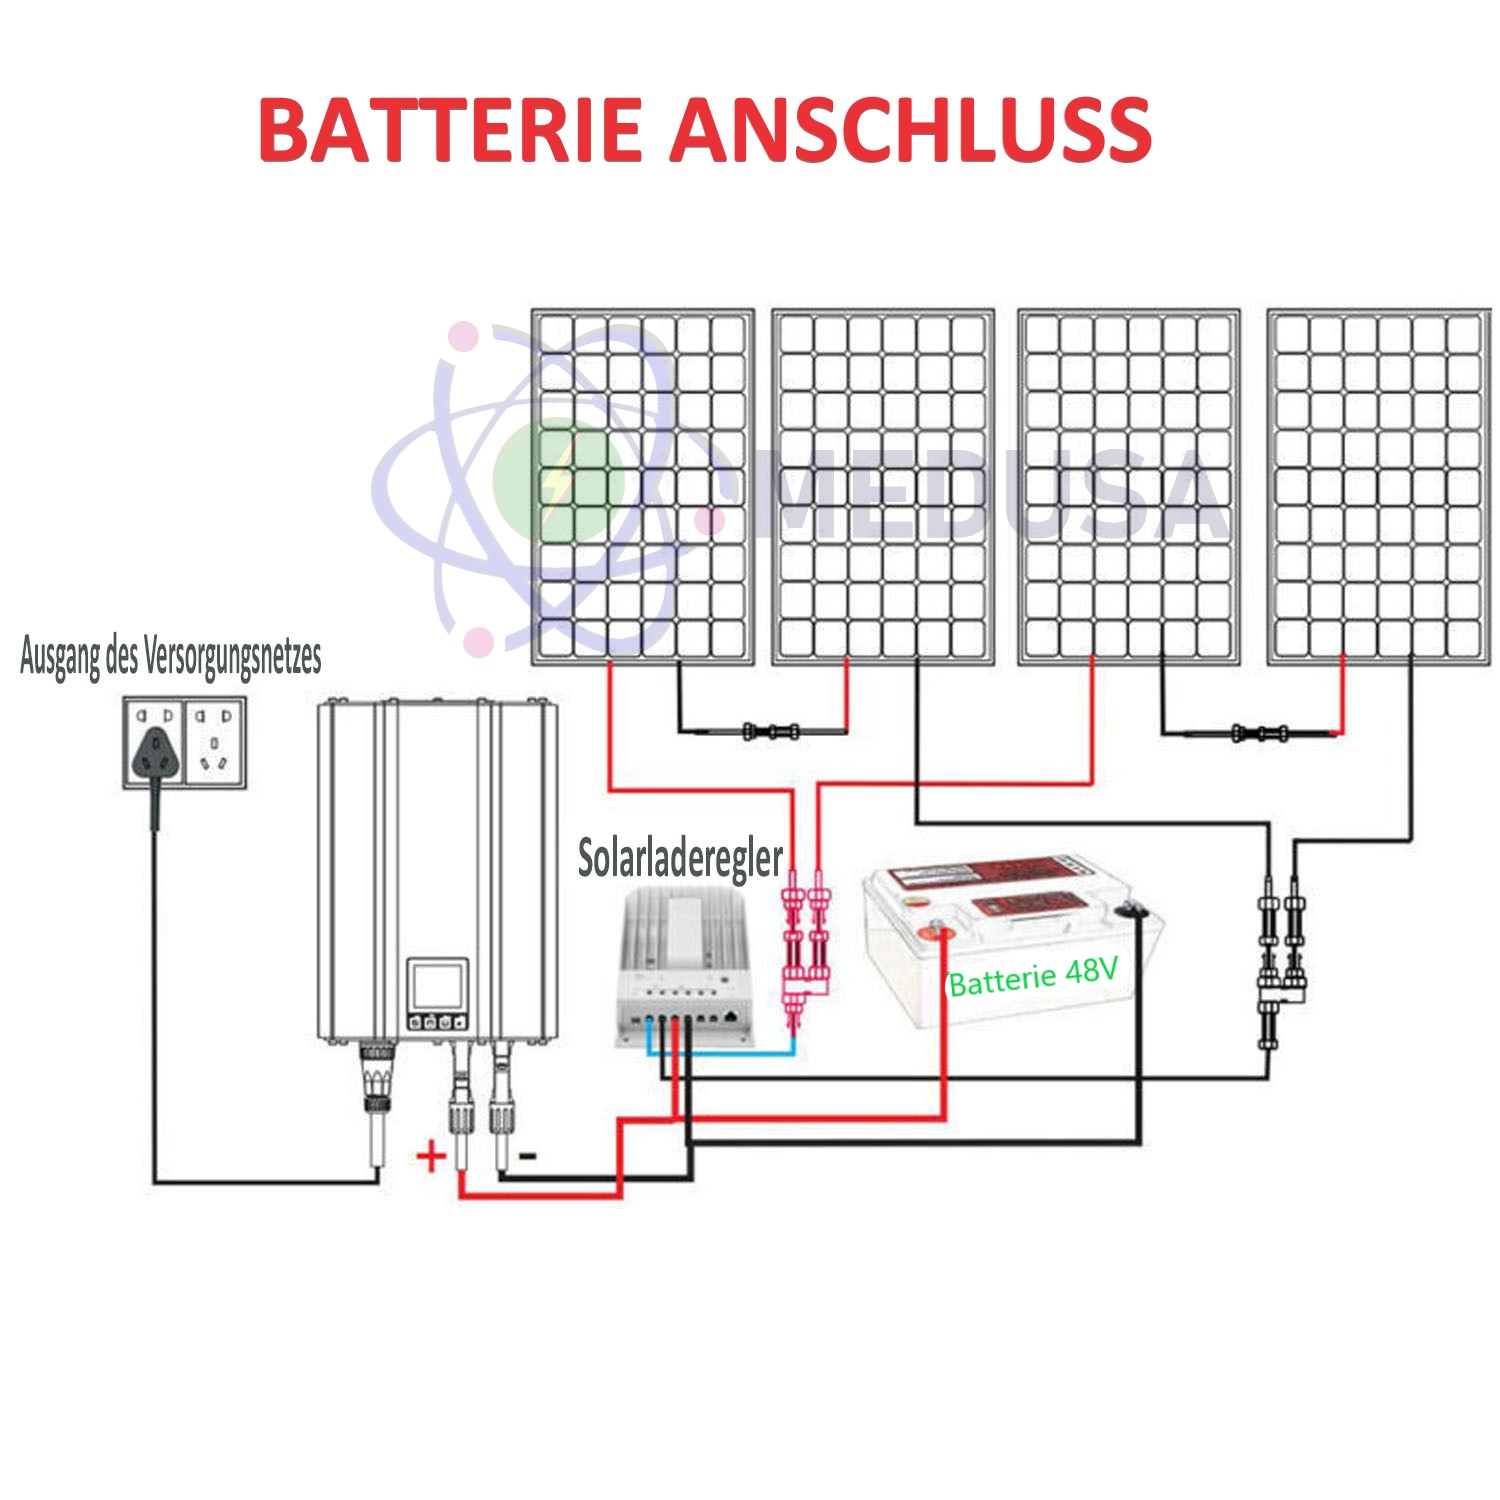 Balkonkraftwerk Netzwechselrichter Lumentree Leistungsbegrenzer Solar  Batterie — MEDUSA